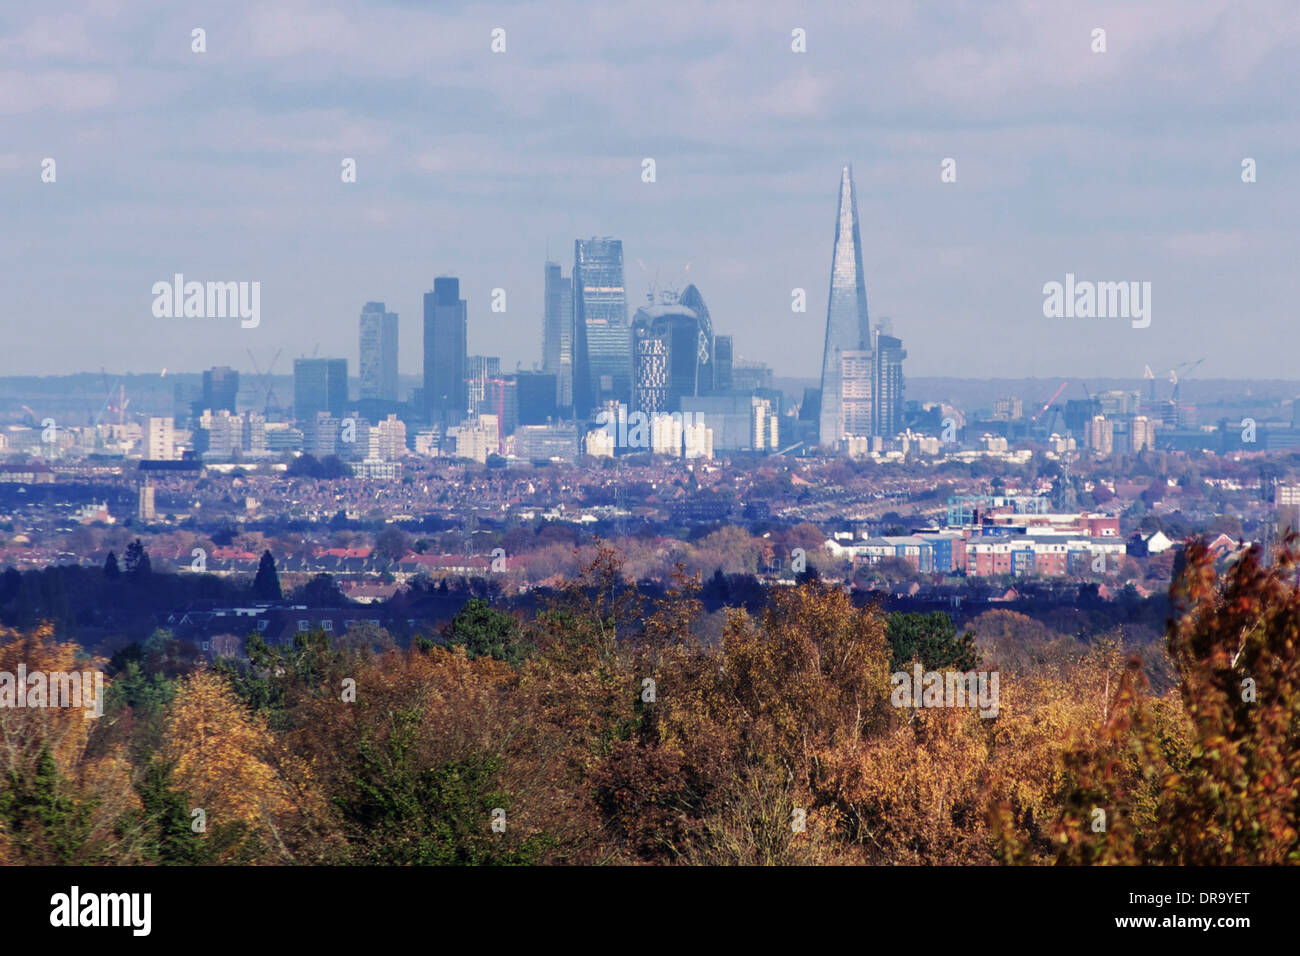 Der City of London, mit seinen legendären Neuzugang - The Shard - gesehen von Epsom Downs, 15 Meilen (24 km) entfernt. Stockfoto